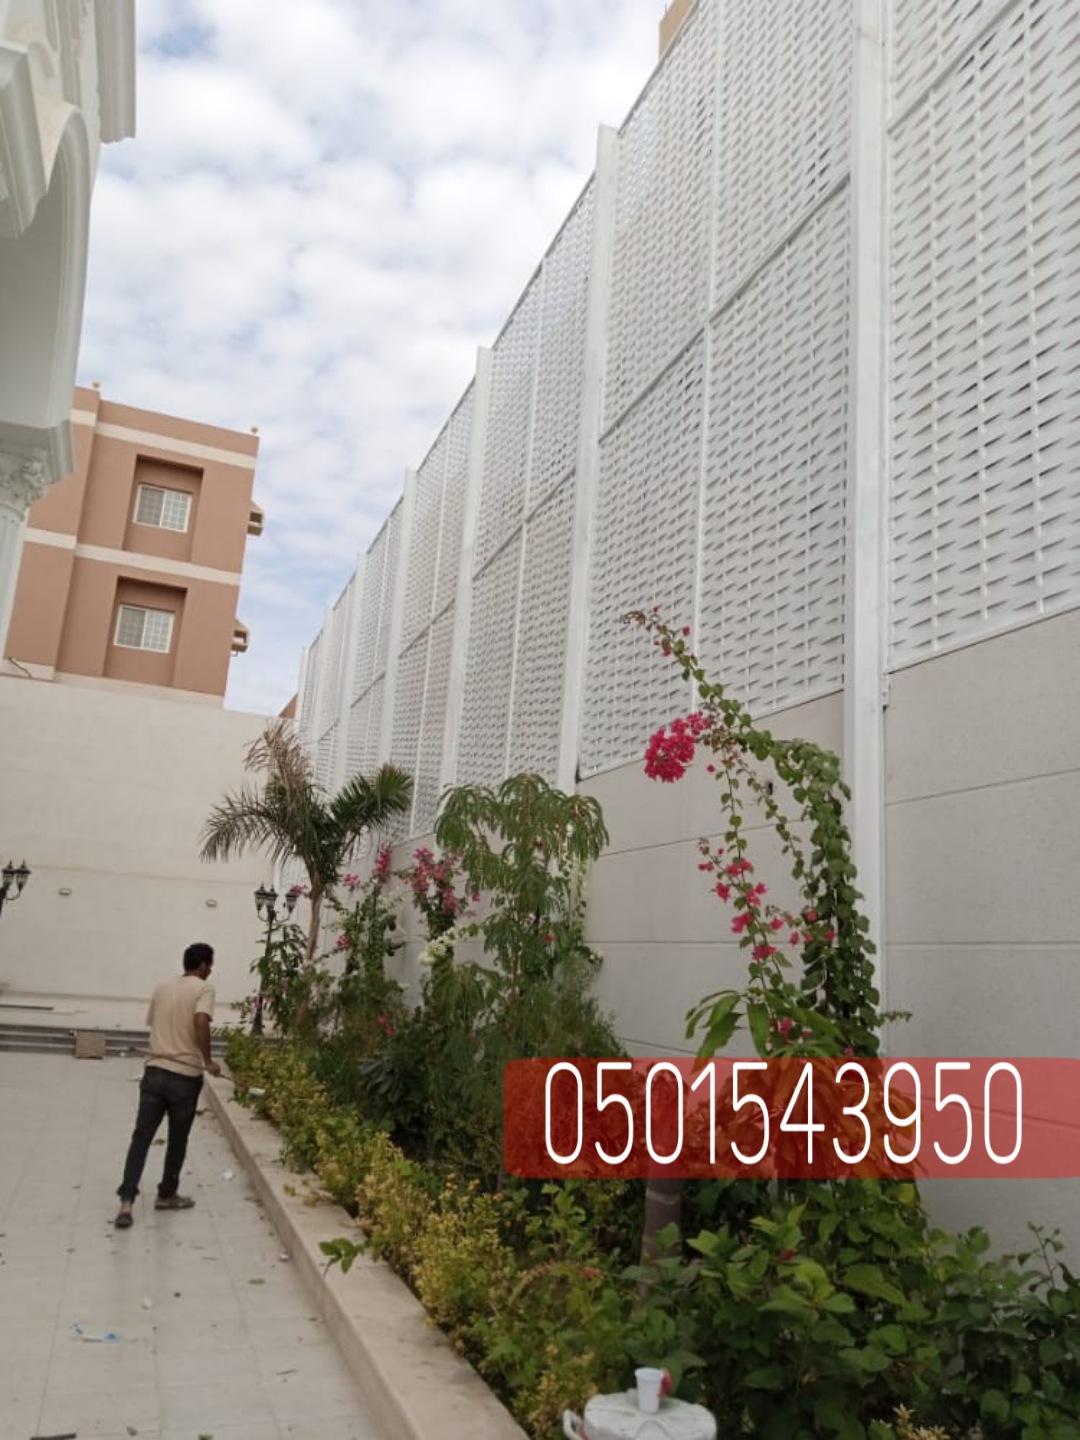 أشكال سواتر منازل في جدة , 0501543950